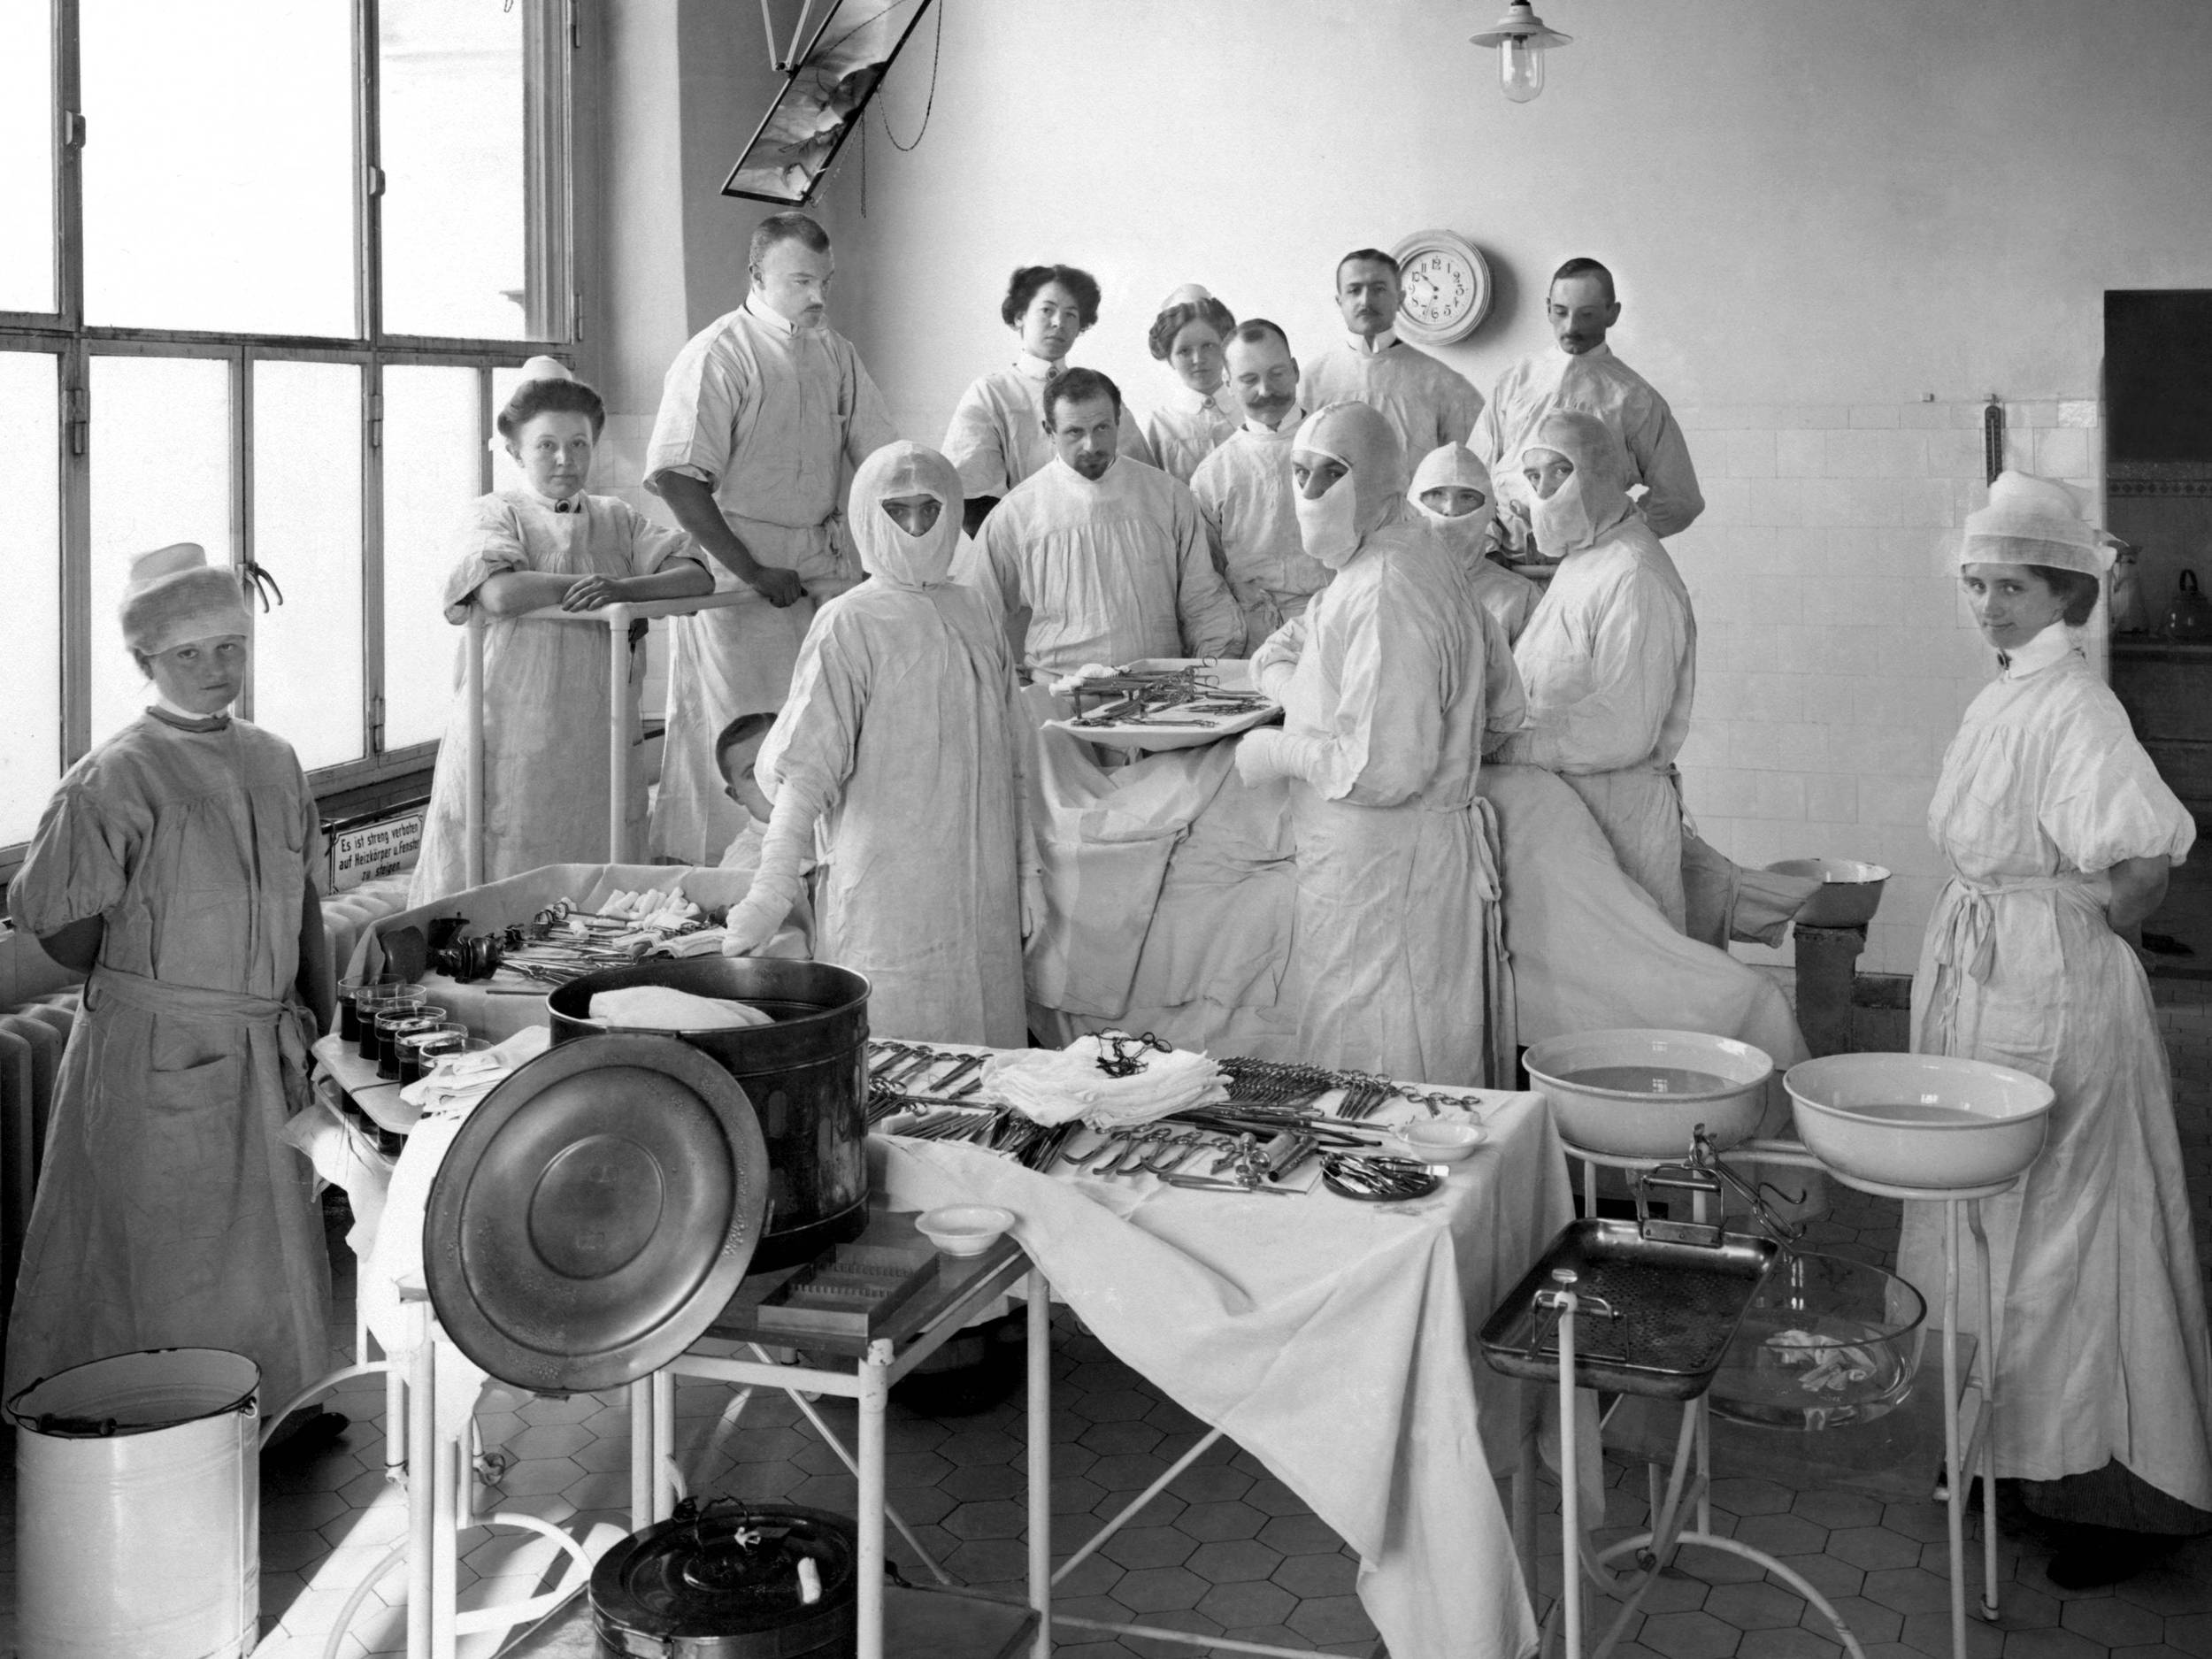 Fotografie, schwarz-weiß, um 1910: Das Foto zeigt fünfzehn Personen in einem Operationssaal. Sie tragen OP-Kleidung, Im Vordergrund liegen OP-Instrumente auf einem Rolltisch, ferner sieht man einen Sterilisator und zwei Emaille-Schüssel mit Wasser.